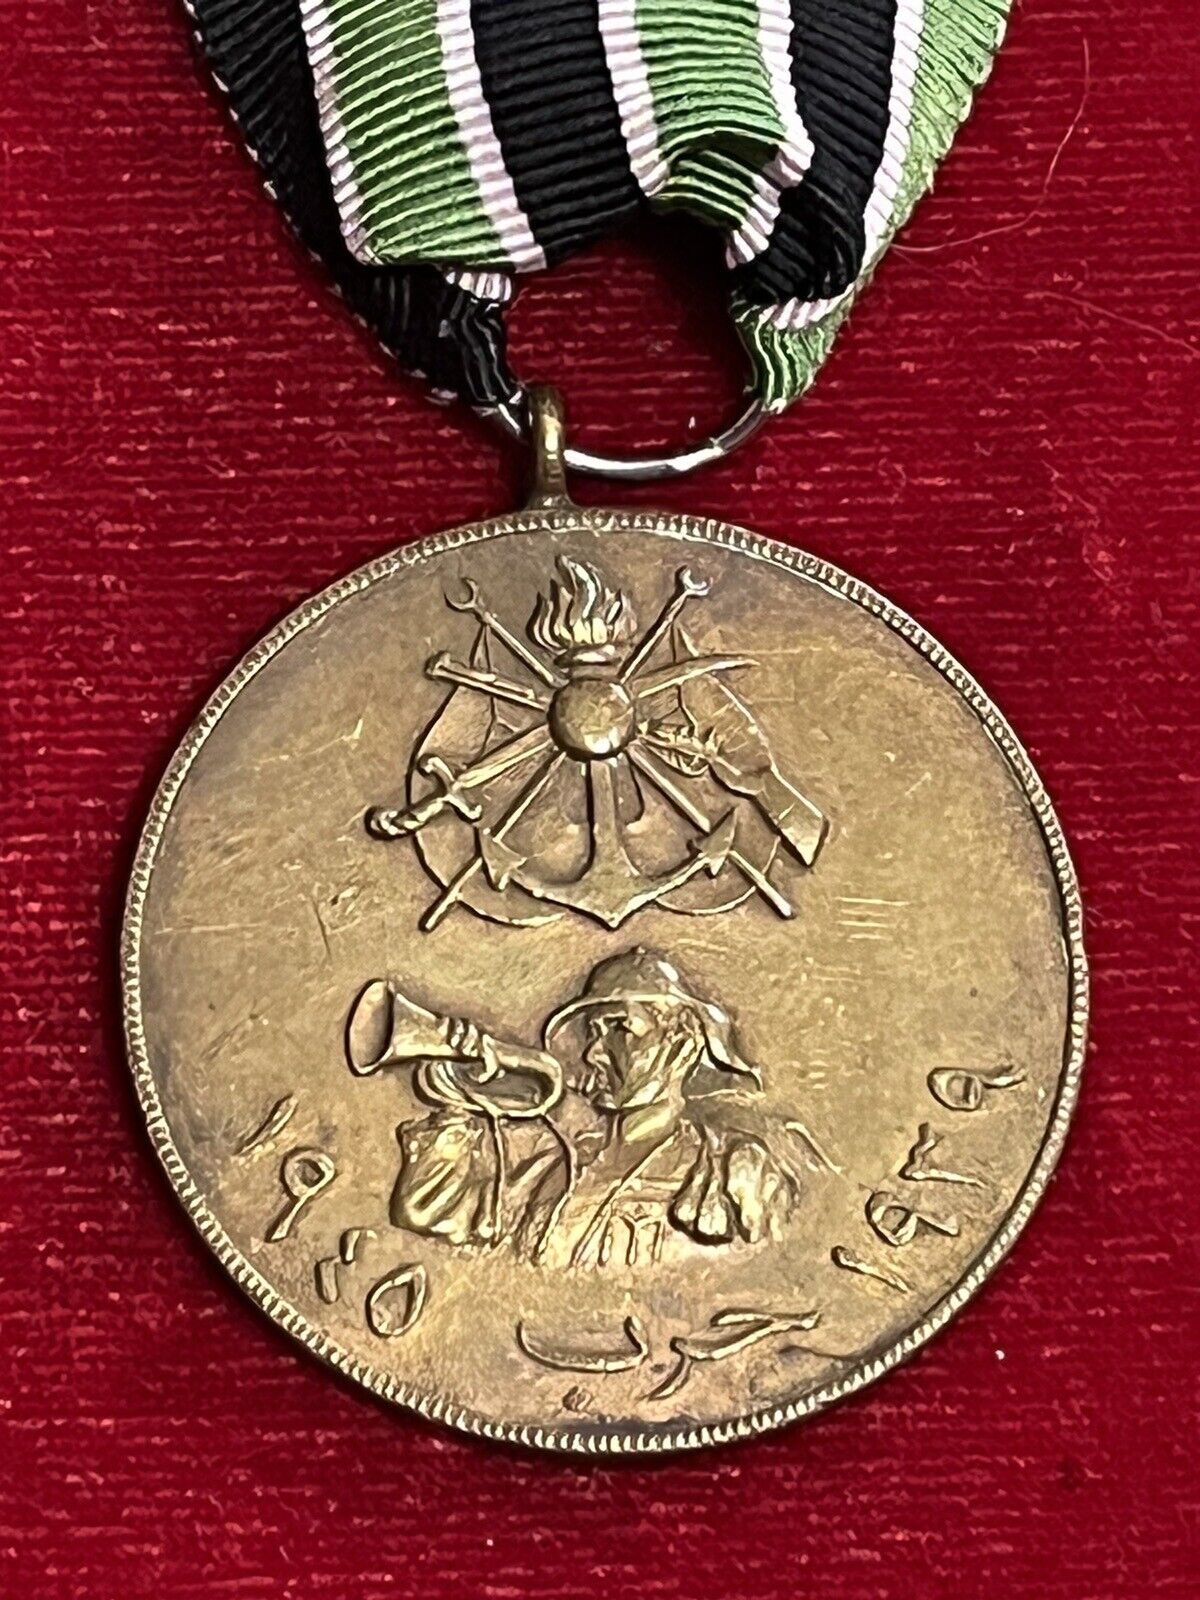 Iraq-Vintage Iraqi Medal of the WWII War 1939-1945.